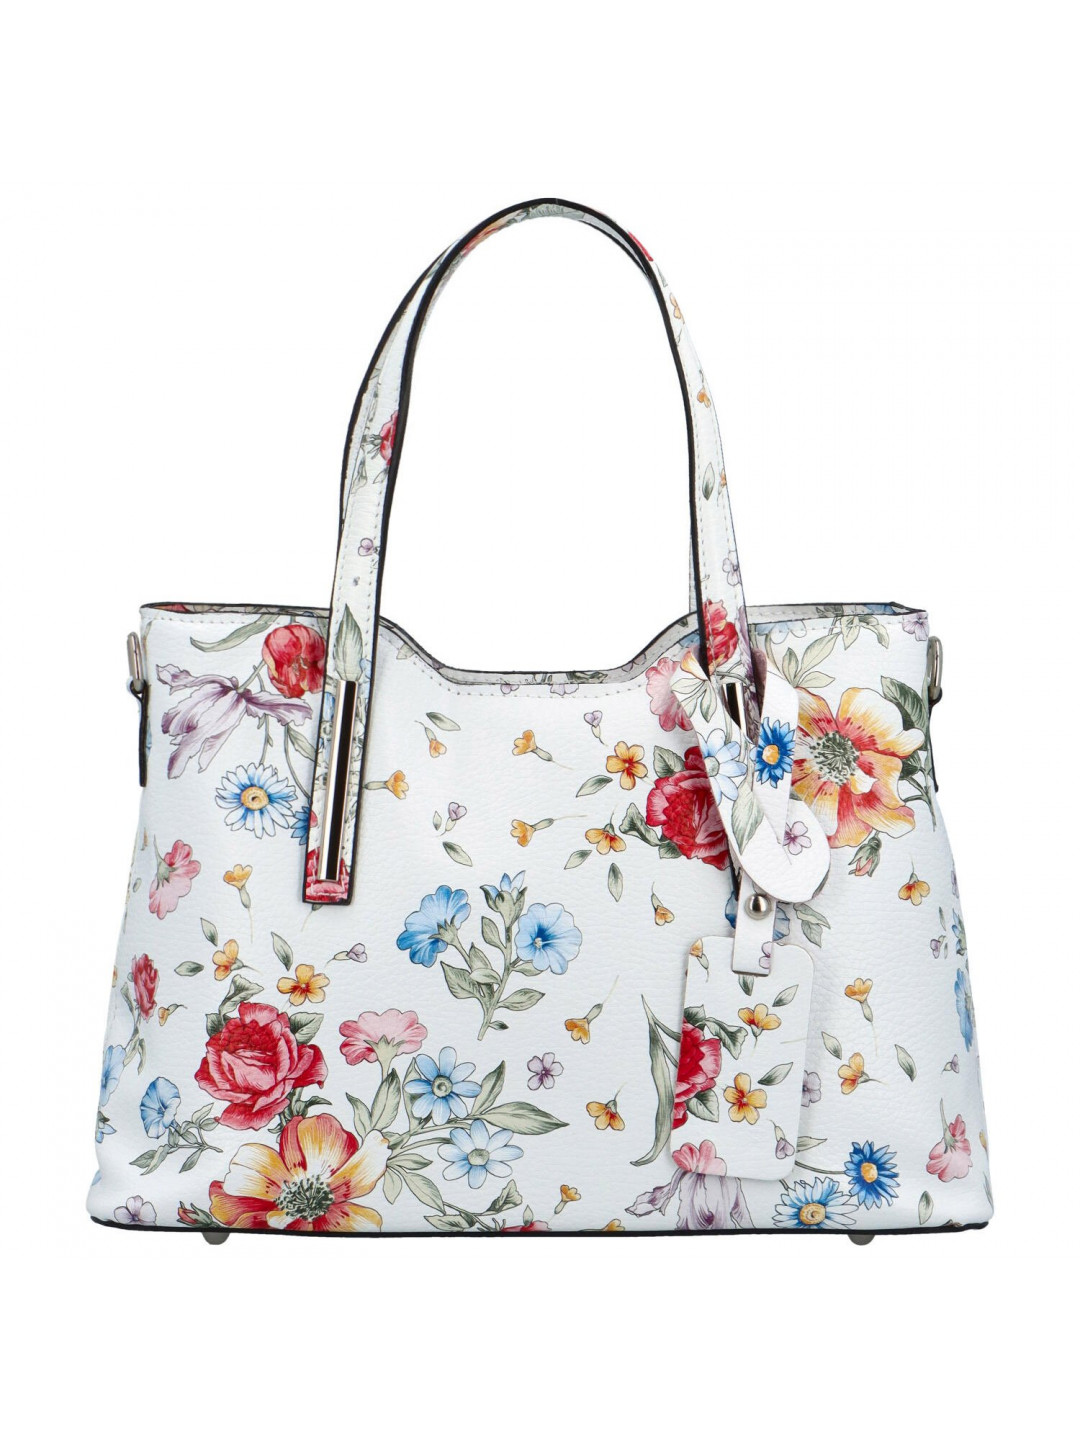 Dámská kožená kabelka bílá květy – Delami Diyora